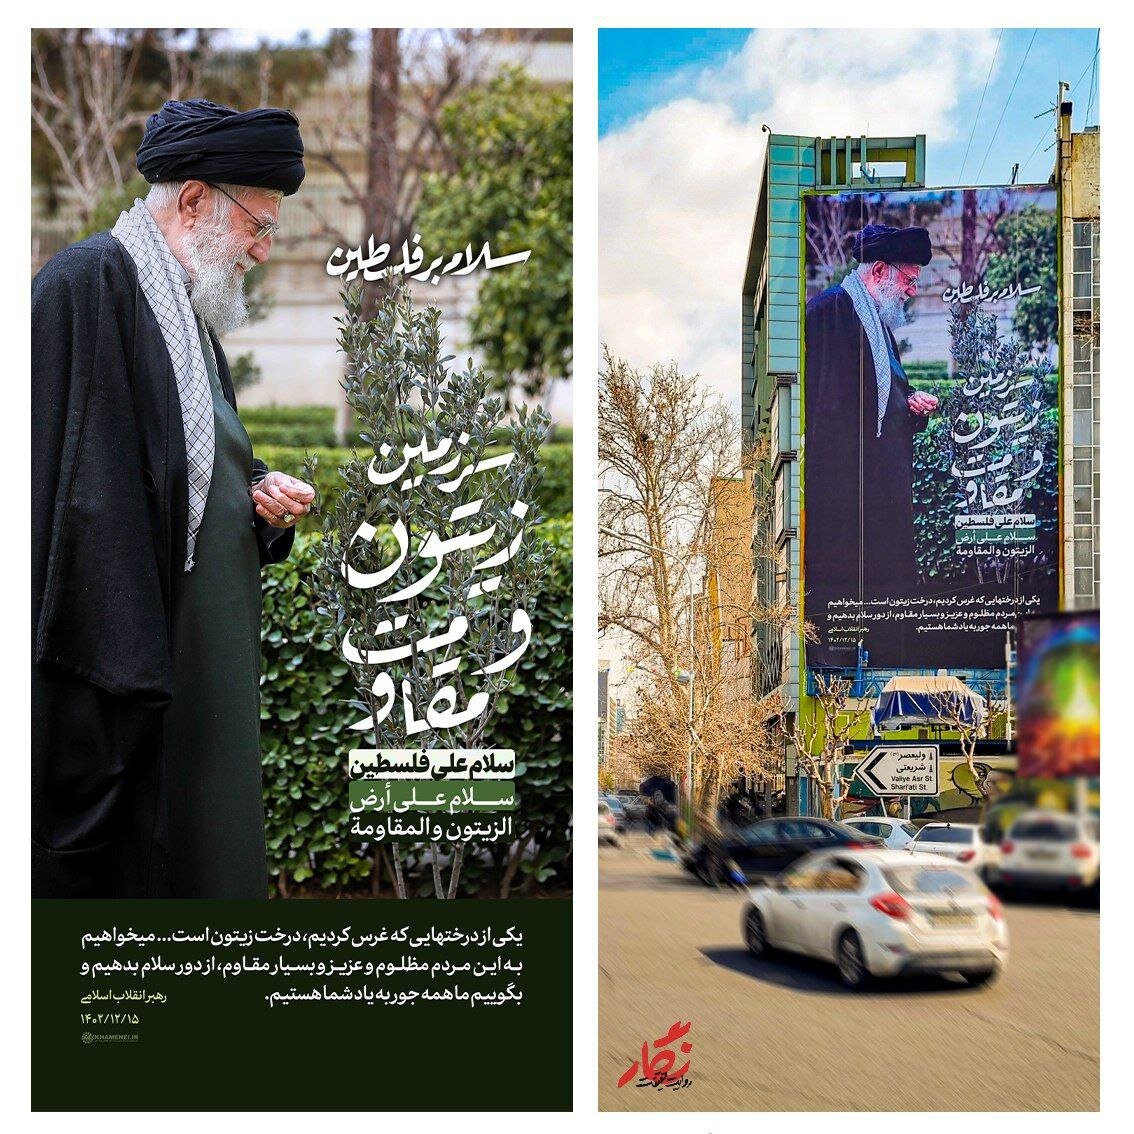 اقدام نمادین رهبر انقلاب به یاد ملت فلسطین بر دیوارنگاره میدانی در تهران +عکس